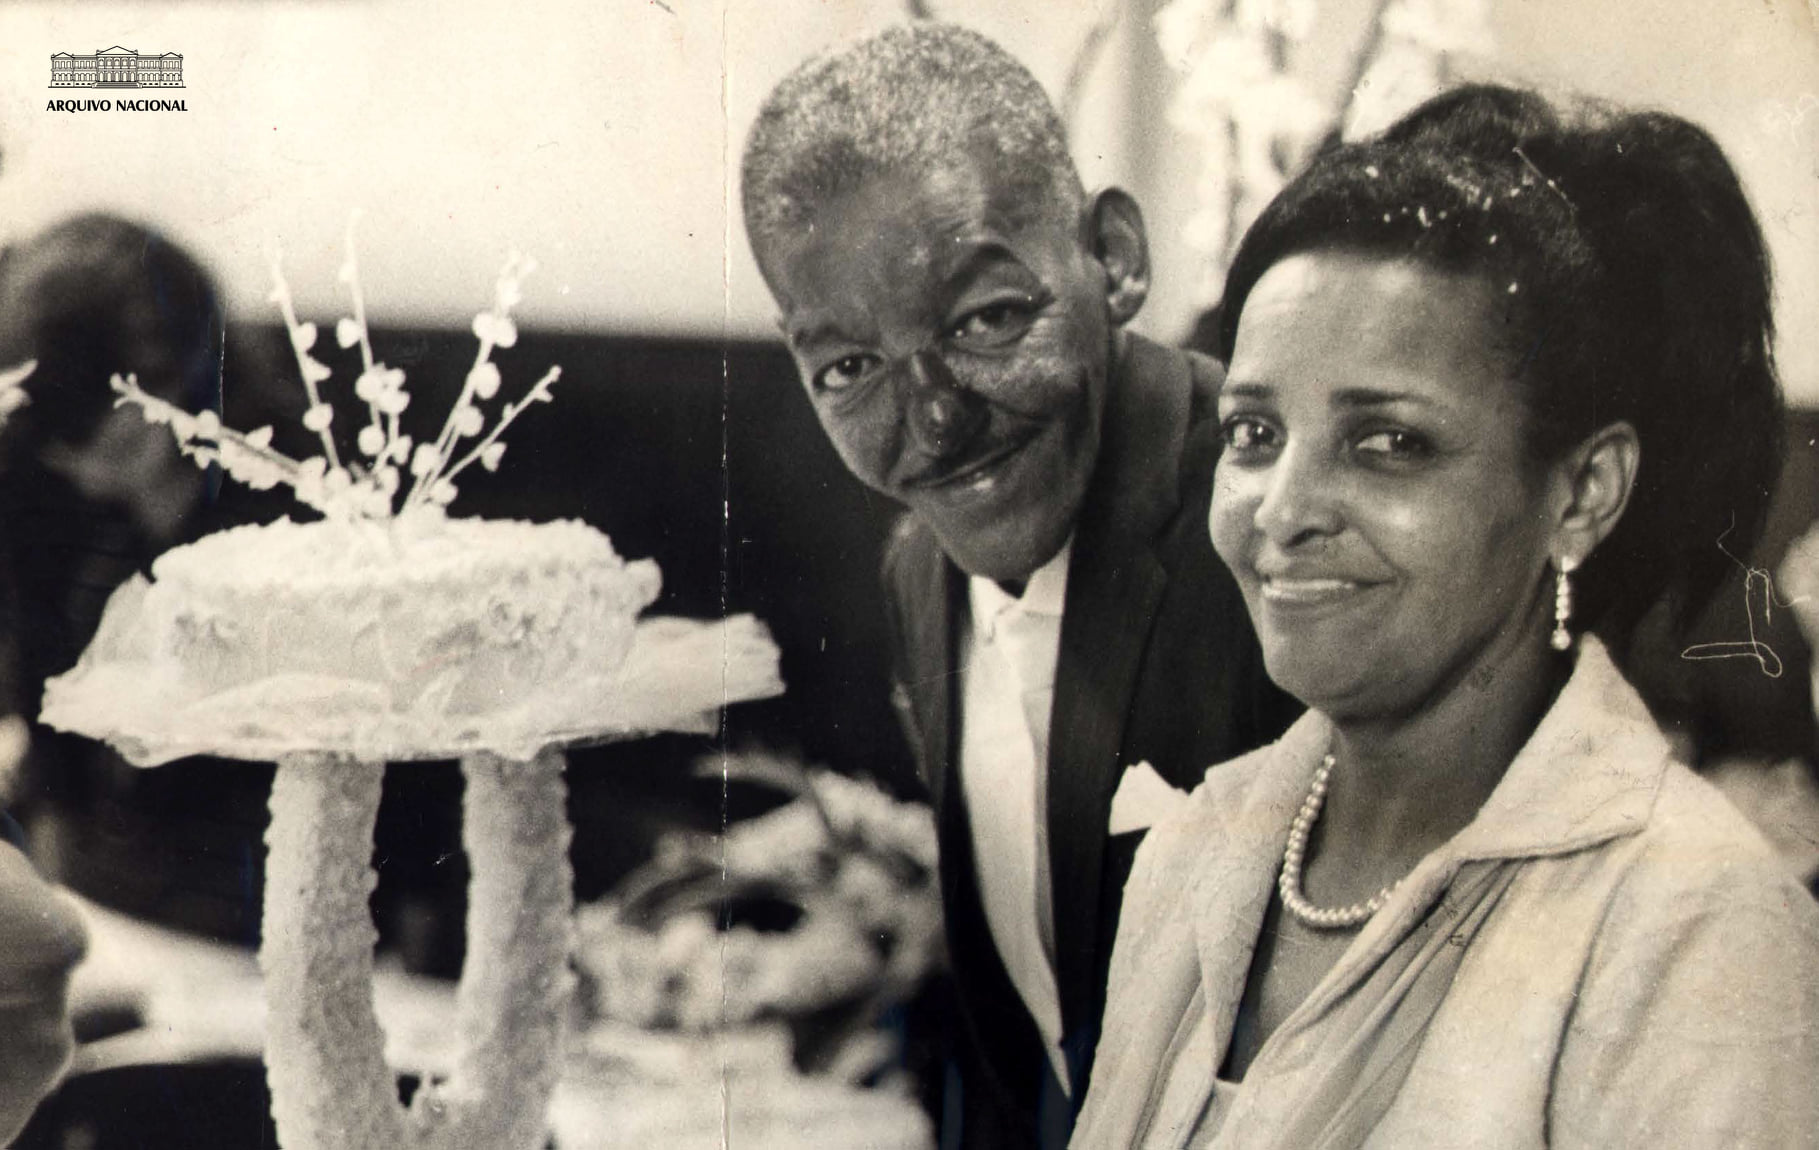 Casamento de Cartola e Dona Zica, em 1964 (Arquivo Nacional/Fundo Correio da Manhã)